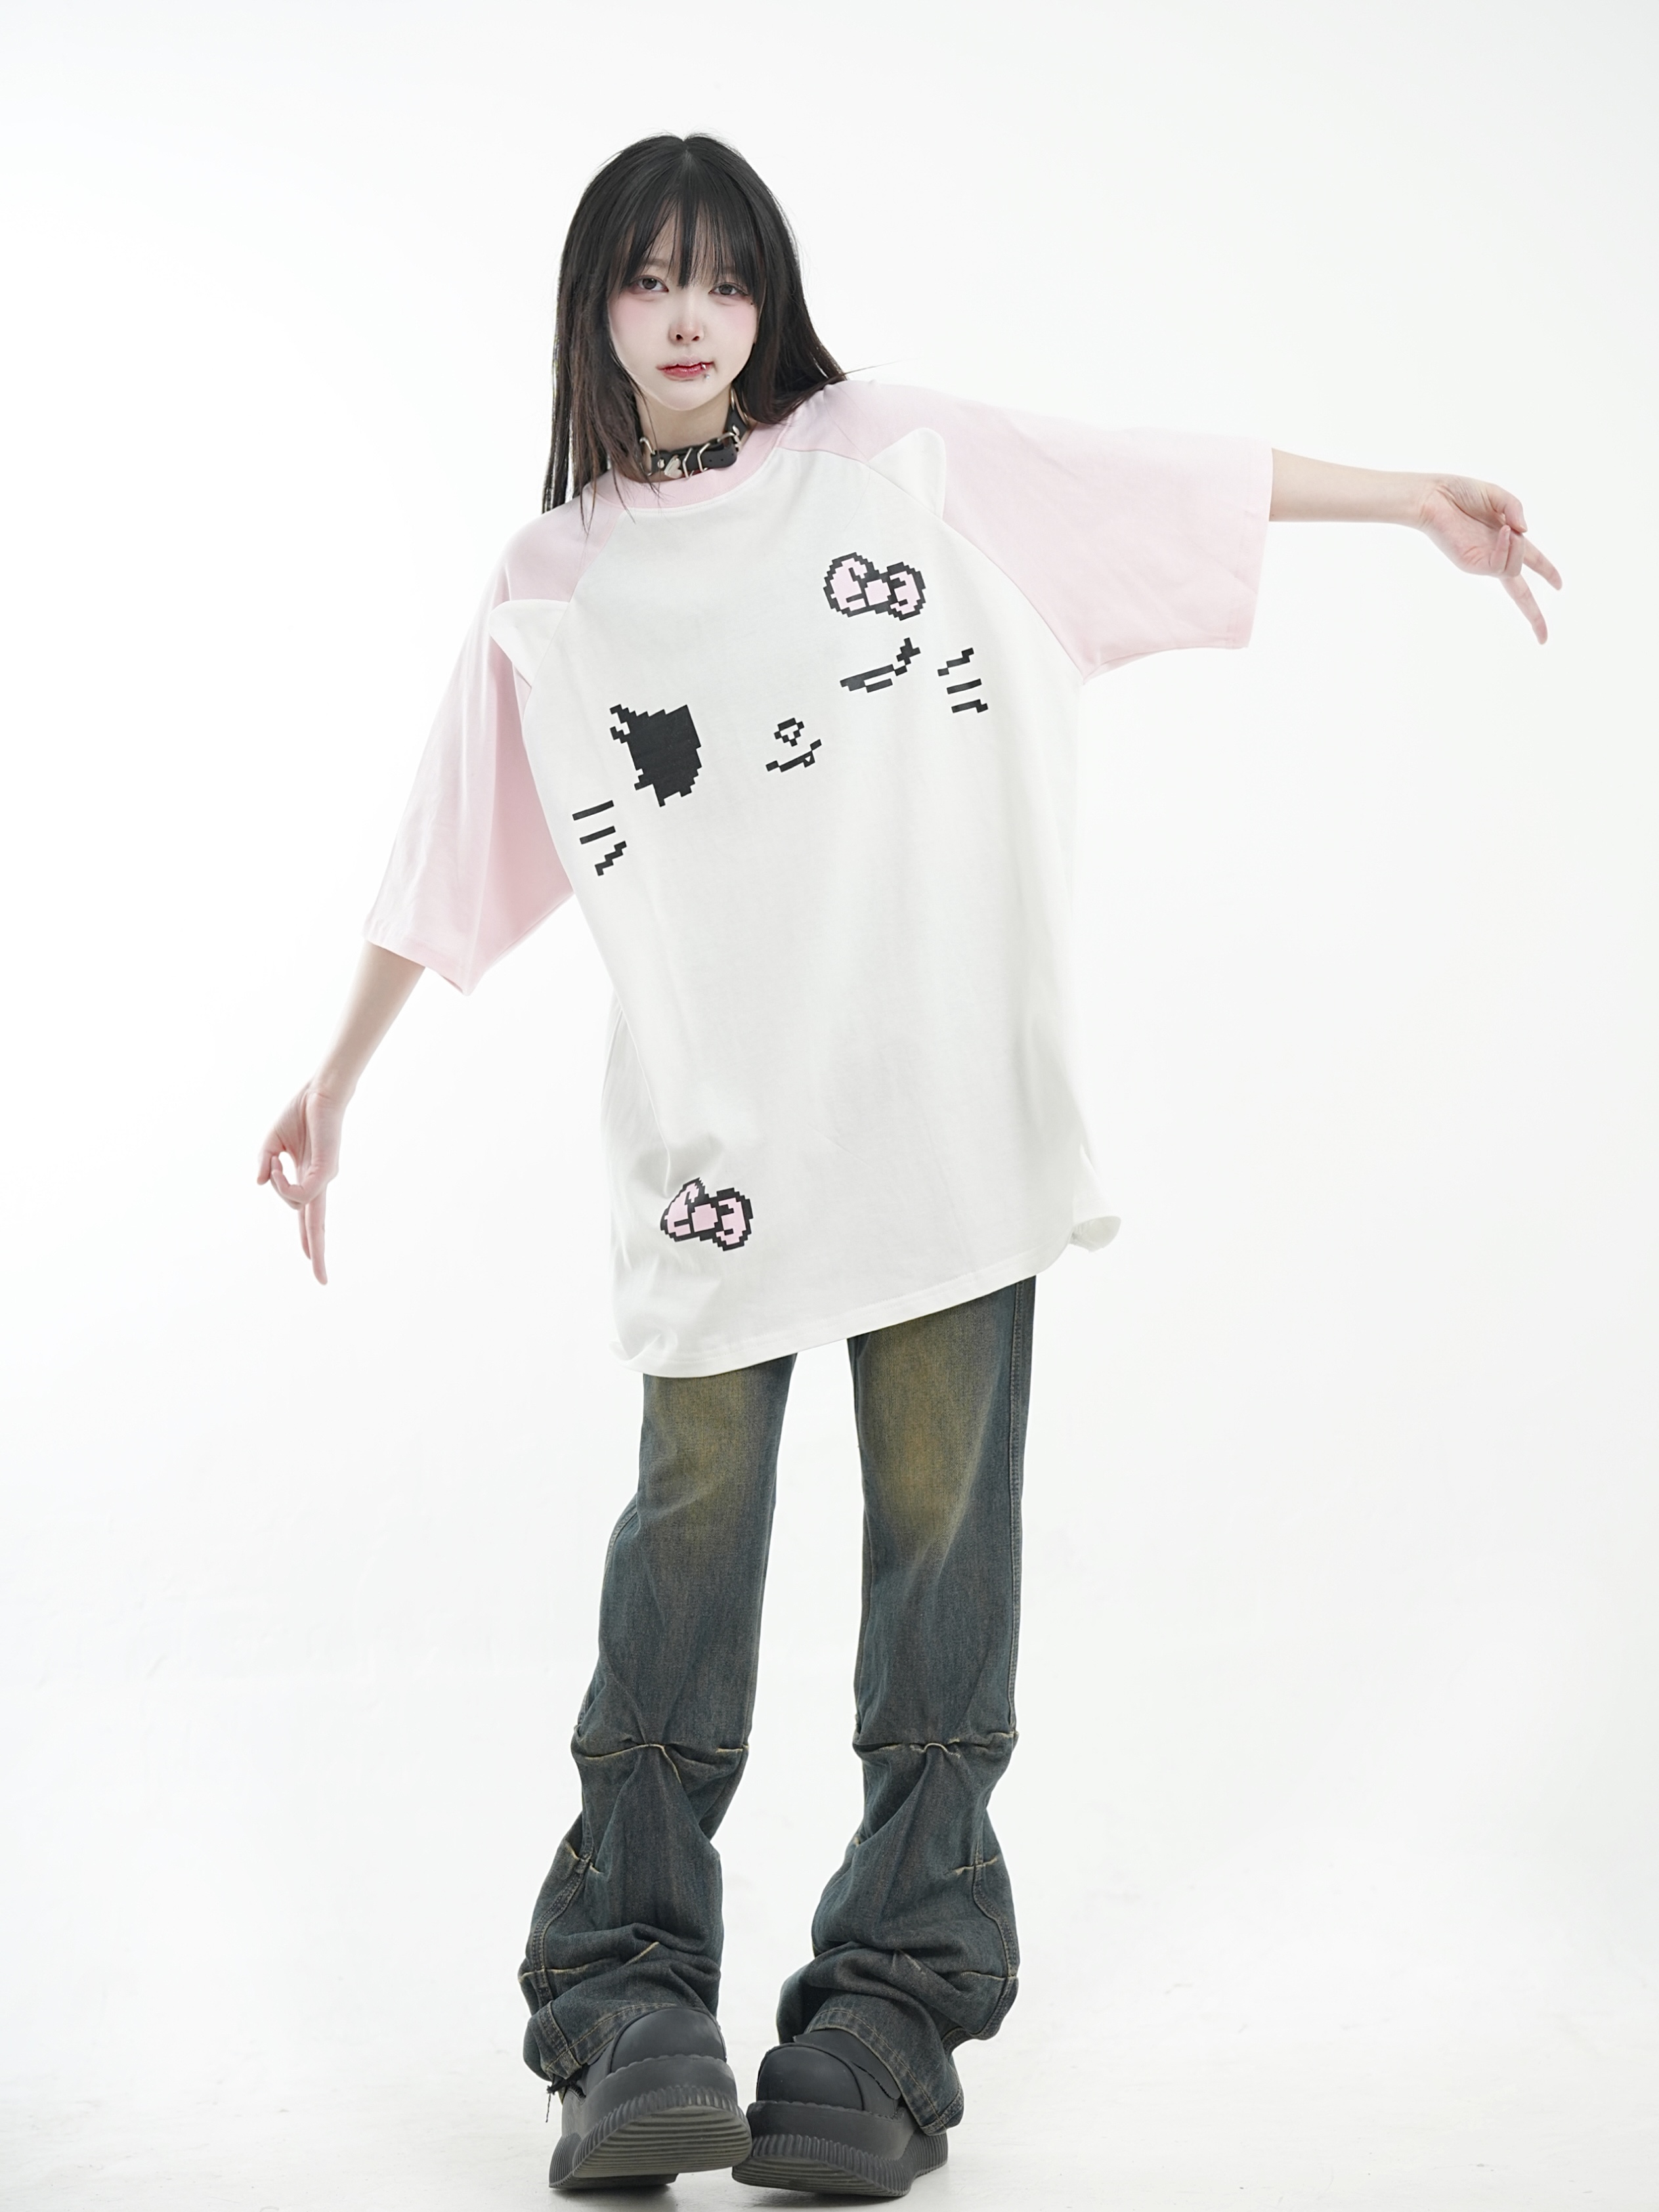 咖喱人夏季新款亚文化骷髅猫猫印花T恤亚比宽松卡通短袖上衣女 女装/女士精品 T恤 原图主图